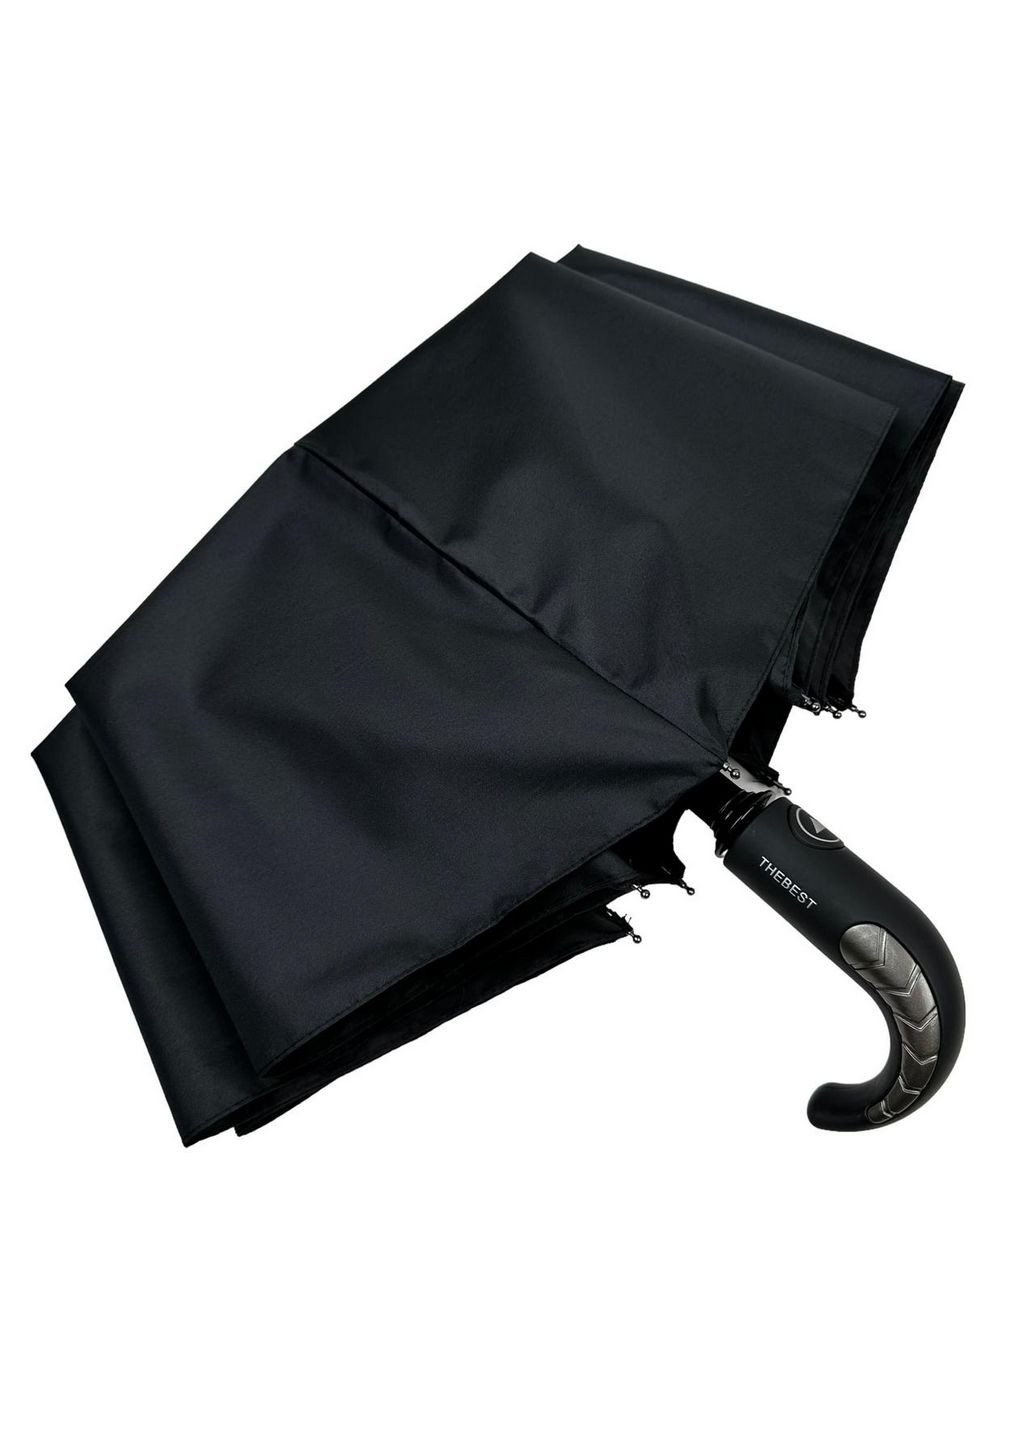 Мужской складной зонт полуавтоматический Best (288046707)